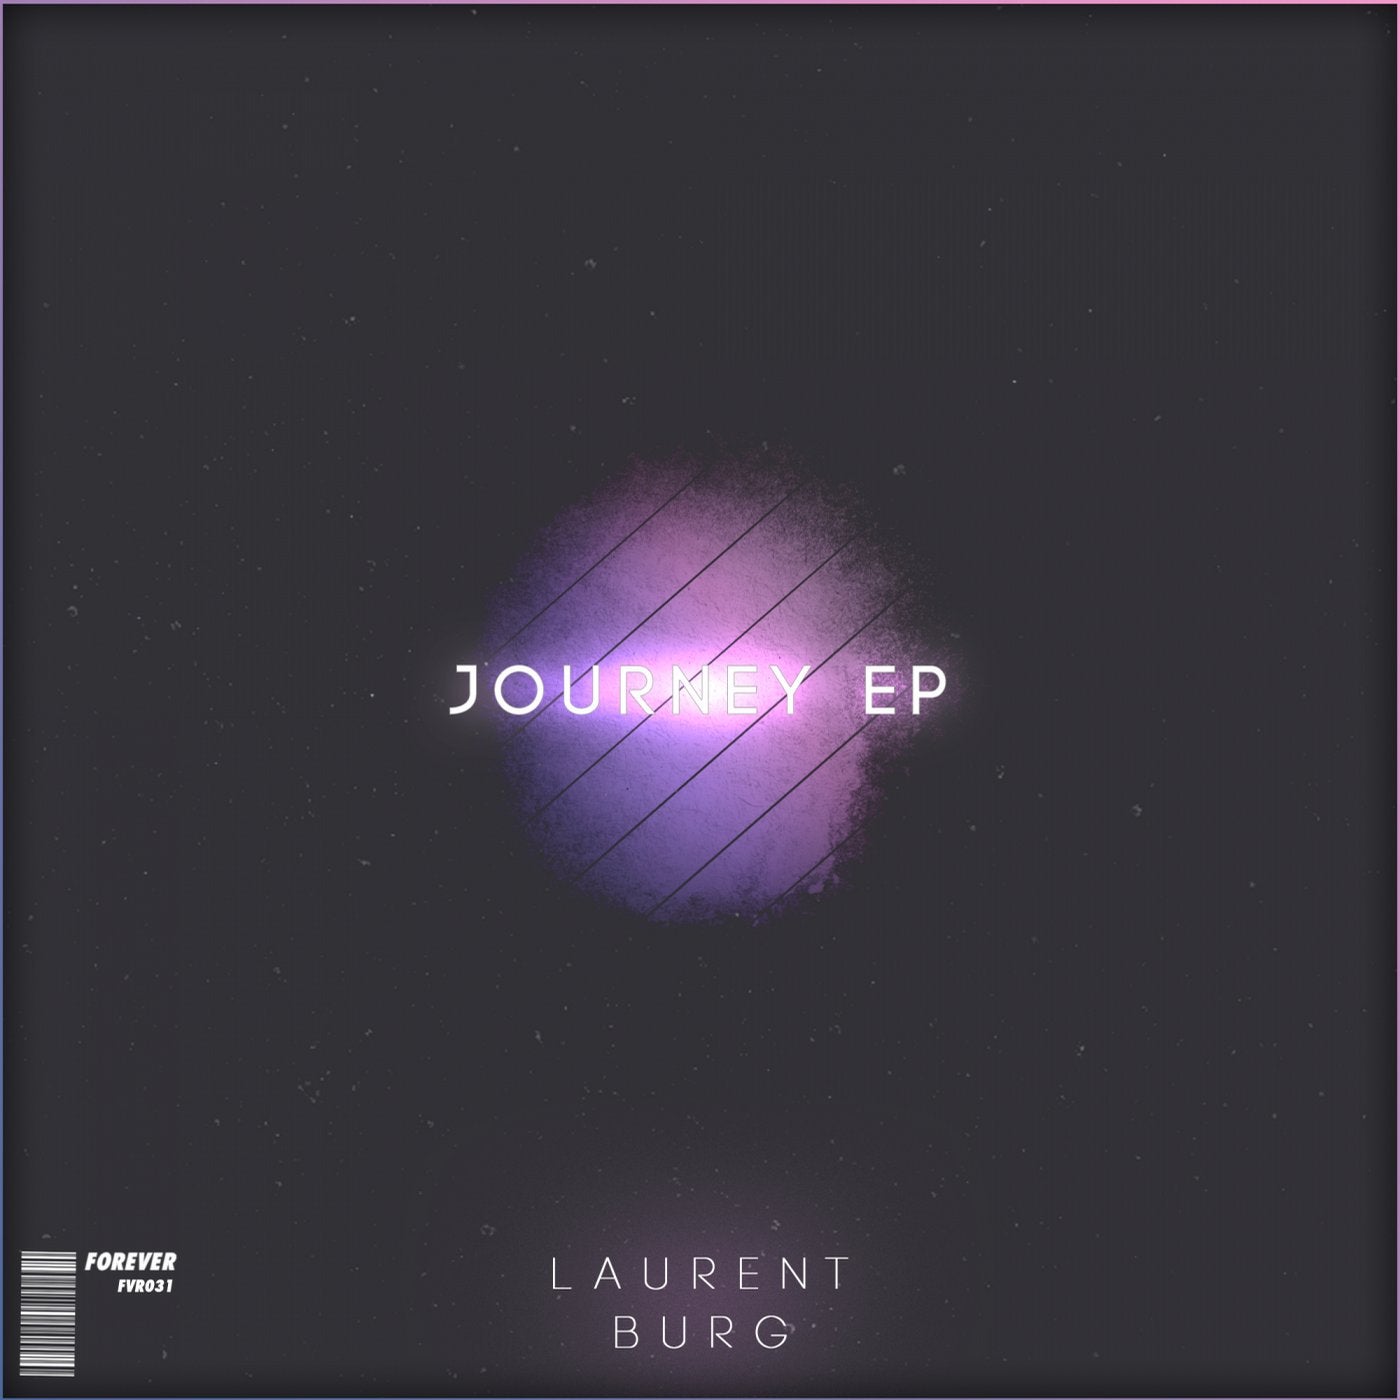 Journey EP